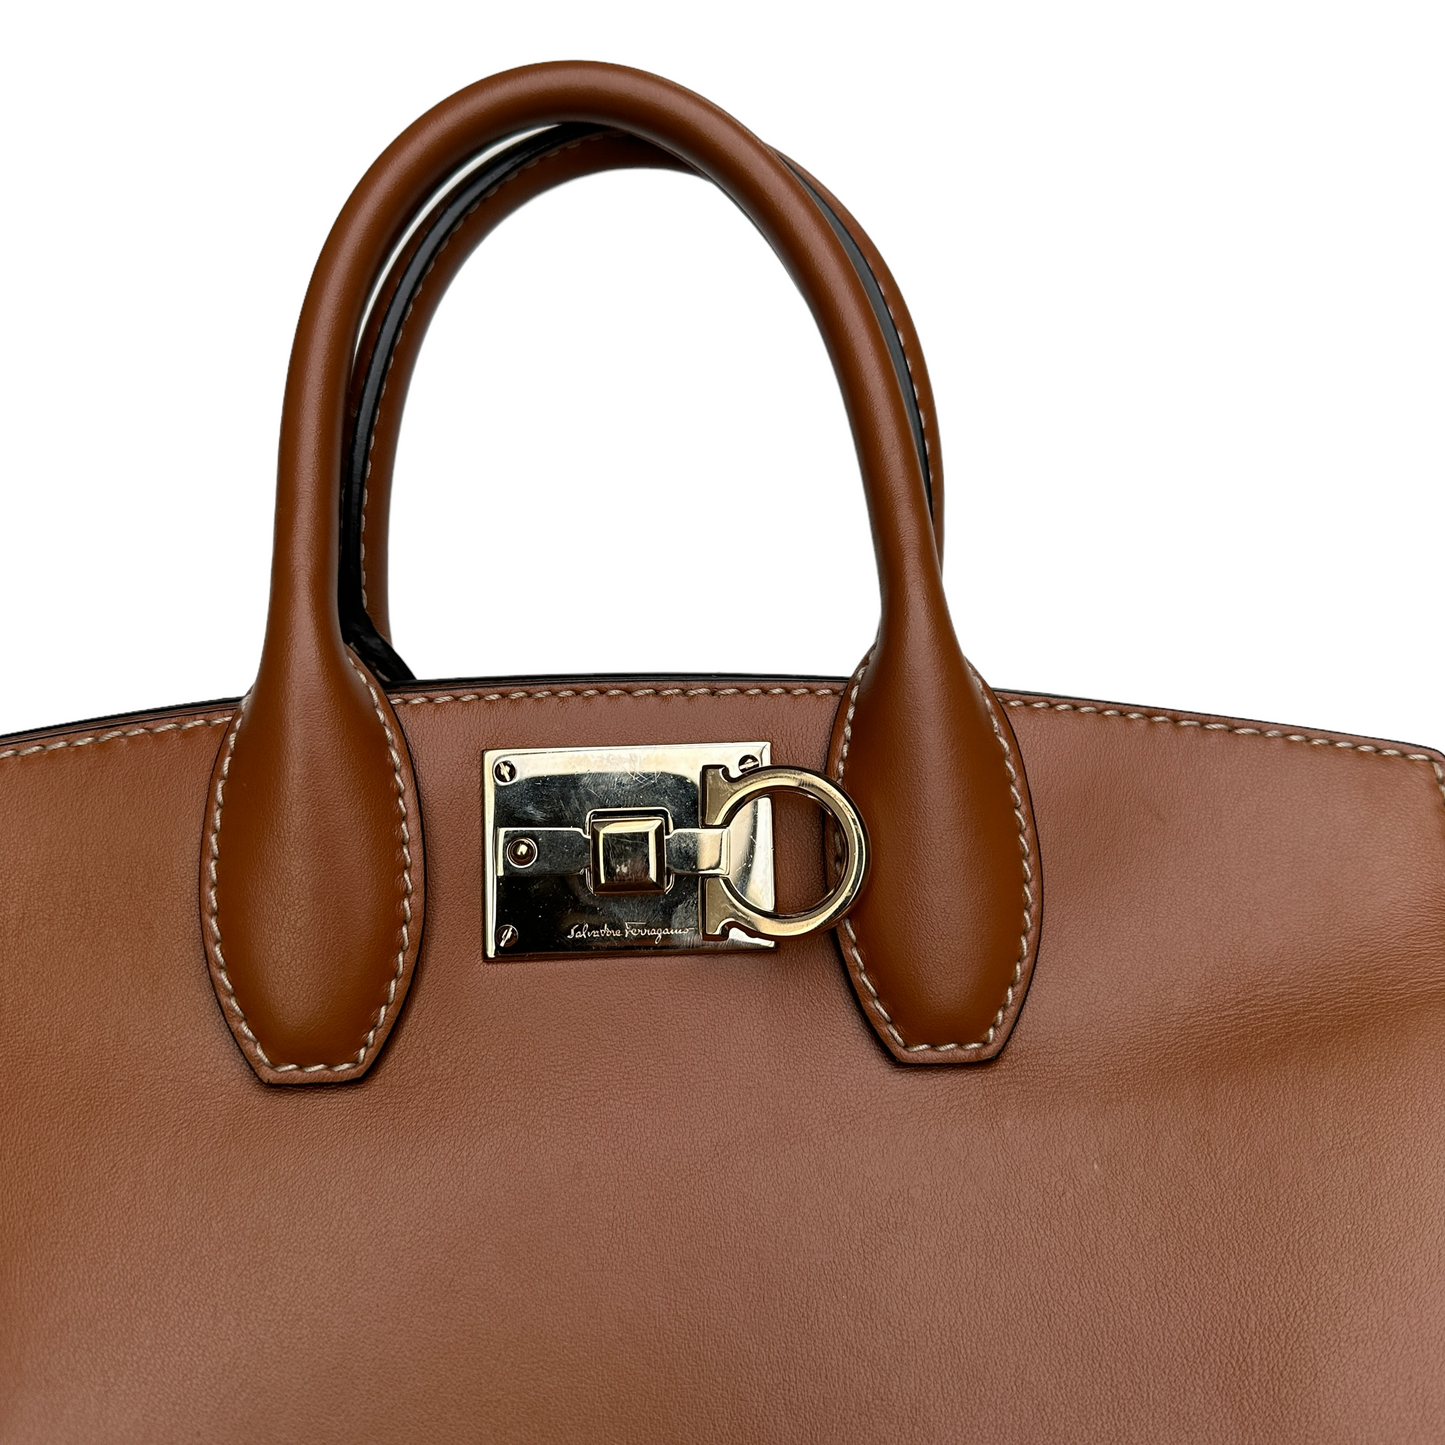 Brown Leather & Raffia Bag w/Crossbody Strap